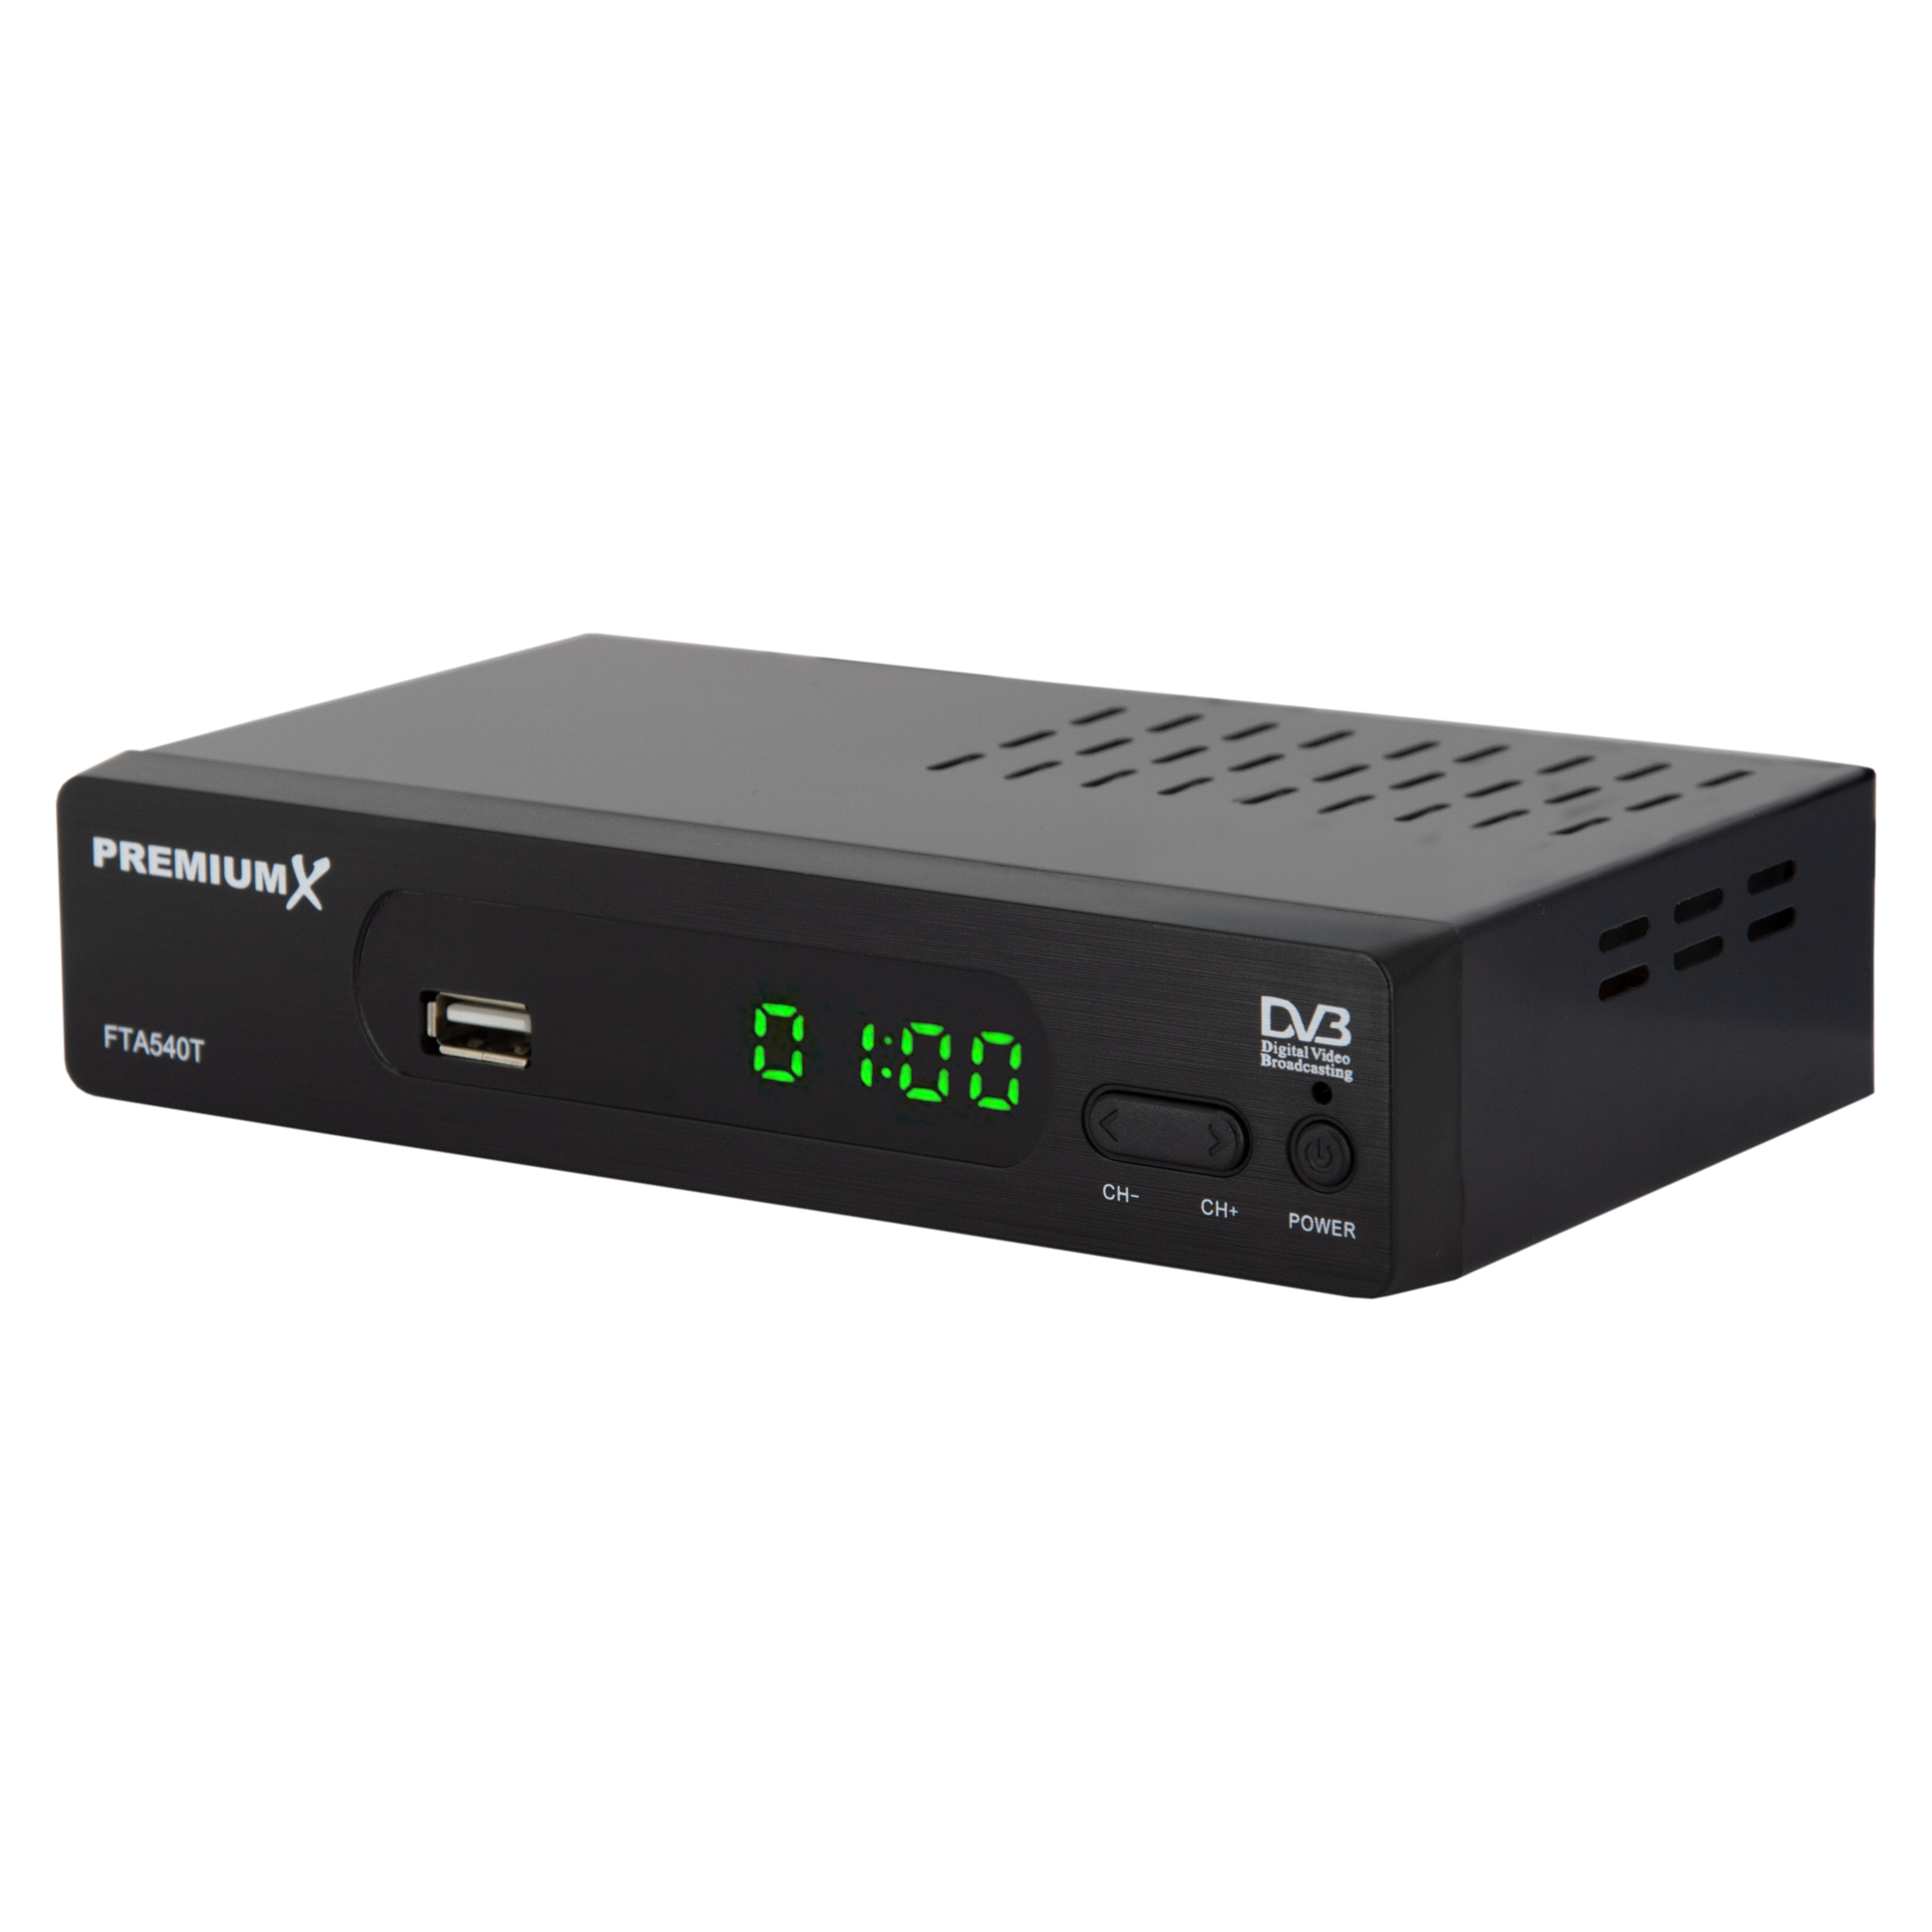 FullHD HDMI 540T FTA Receiver Receiver DVB-T2 PREMIUMX (Schwarz) USB H.265 Digital SCART Terrestrischer DVB-T2